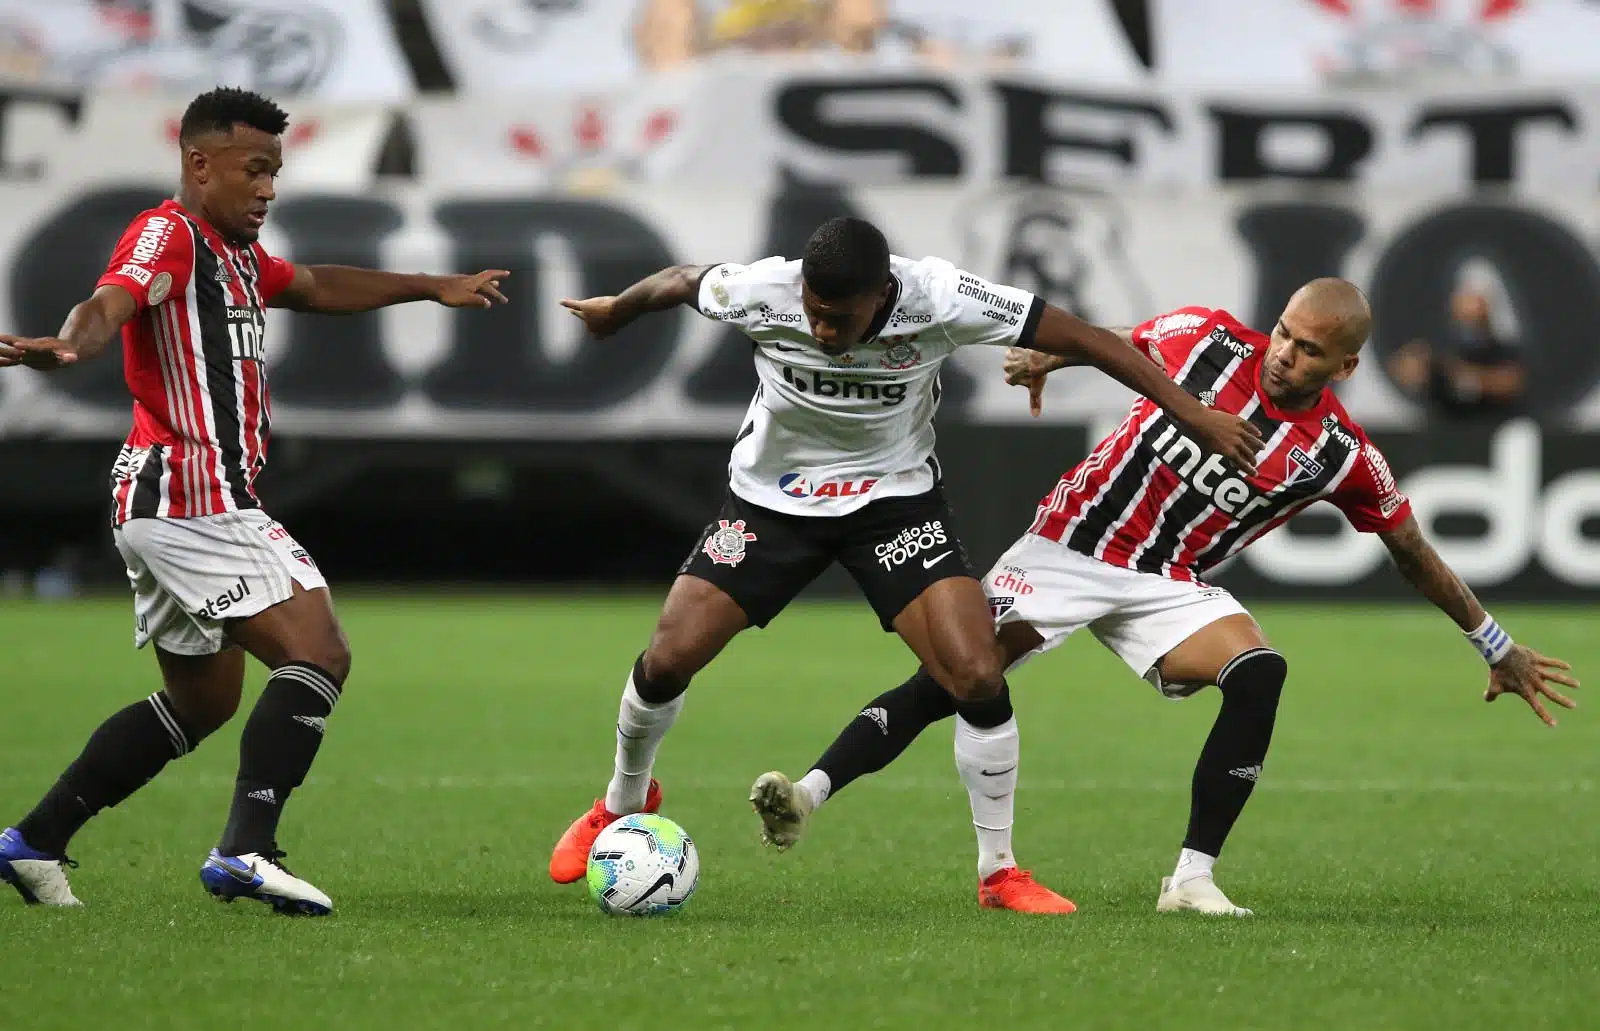 Veja quais são os desfalques do Corinthians para enfrentar o São Paulo no primeiro turno do Campeonato Brasileiro